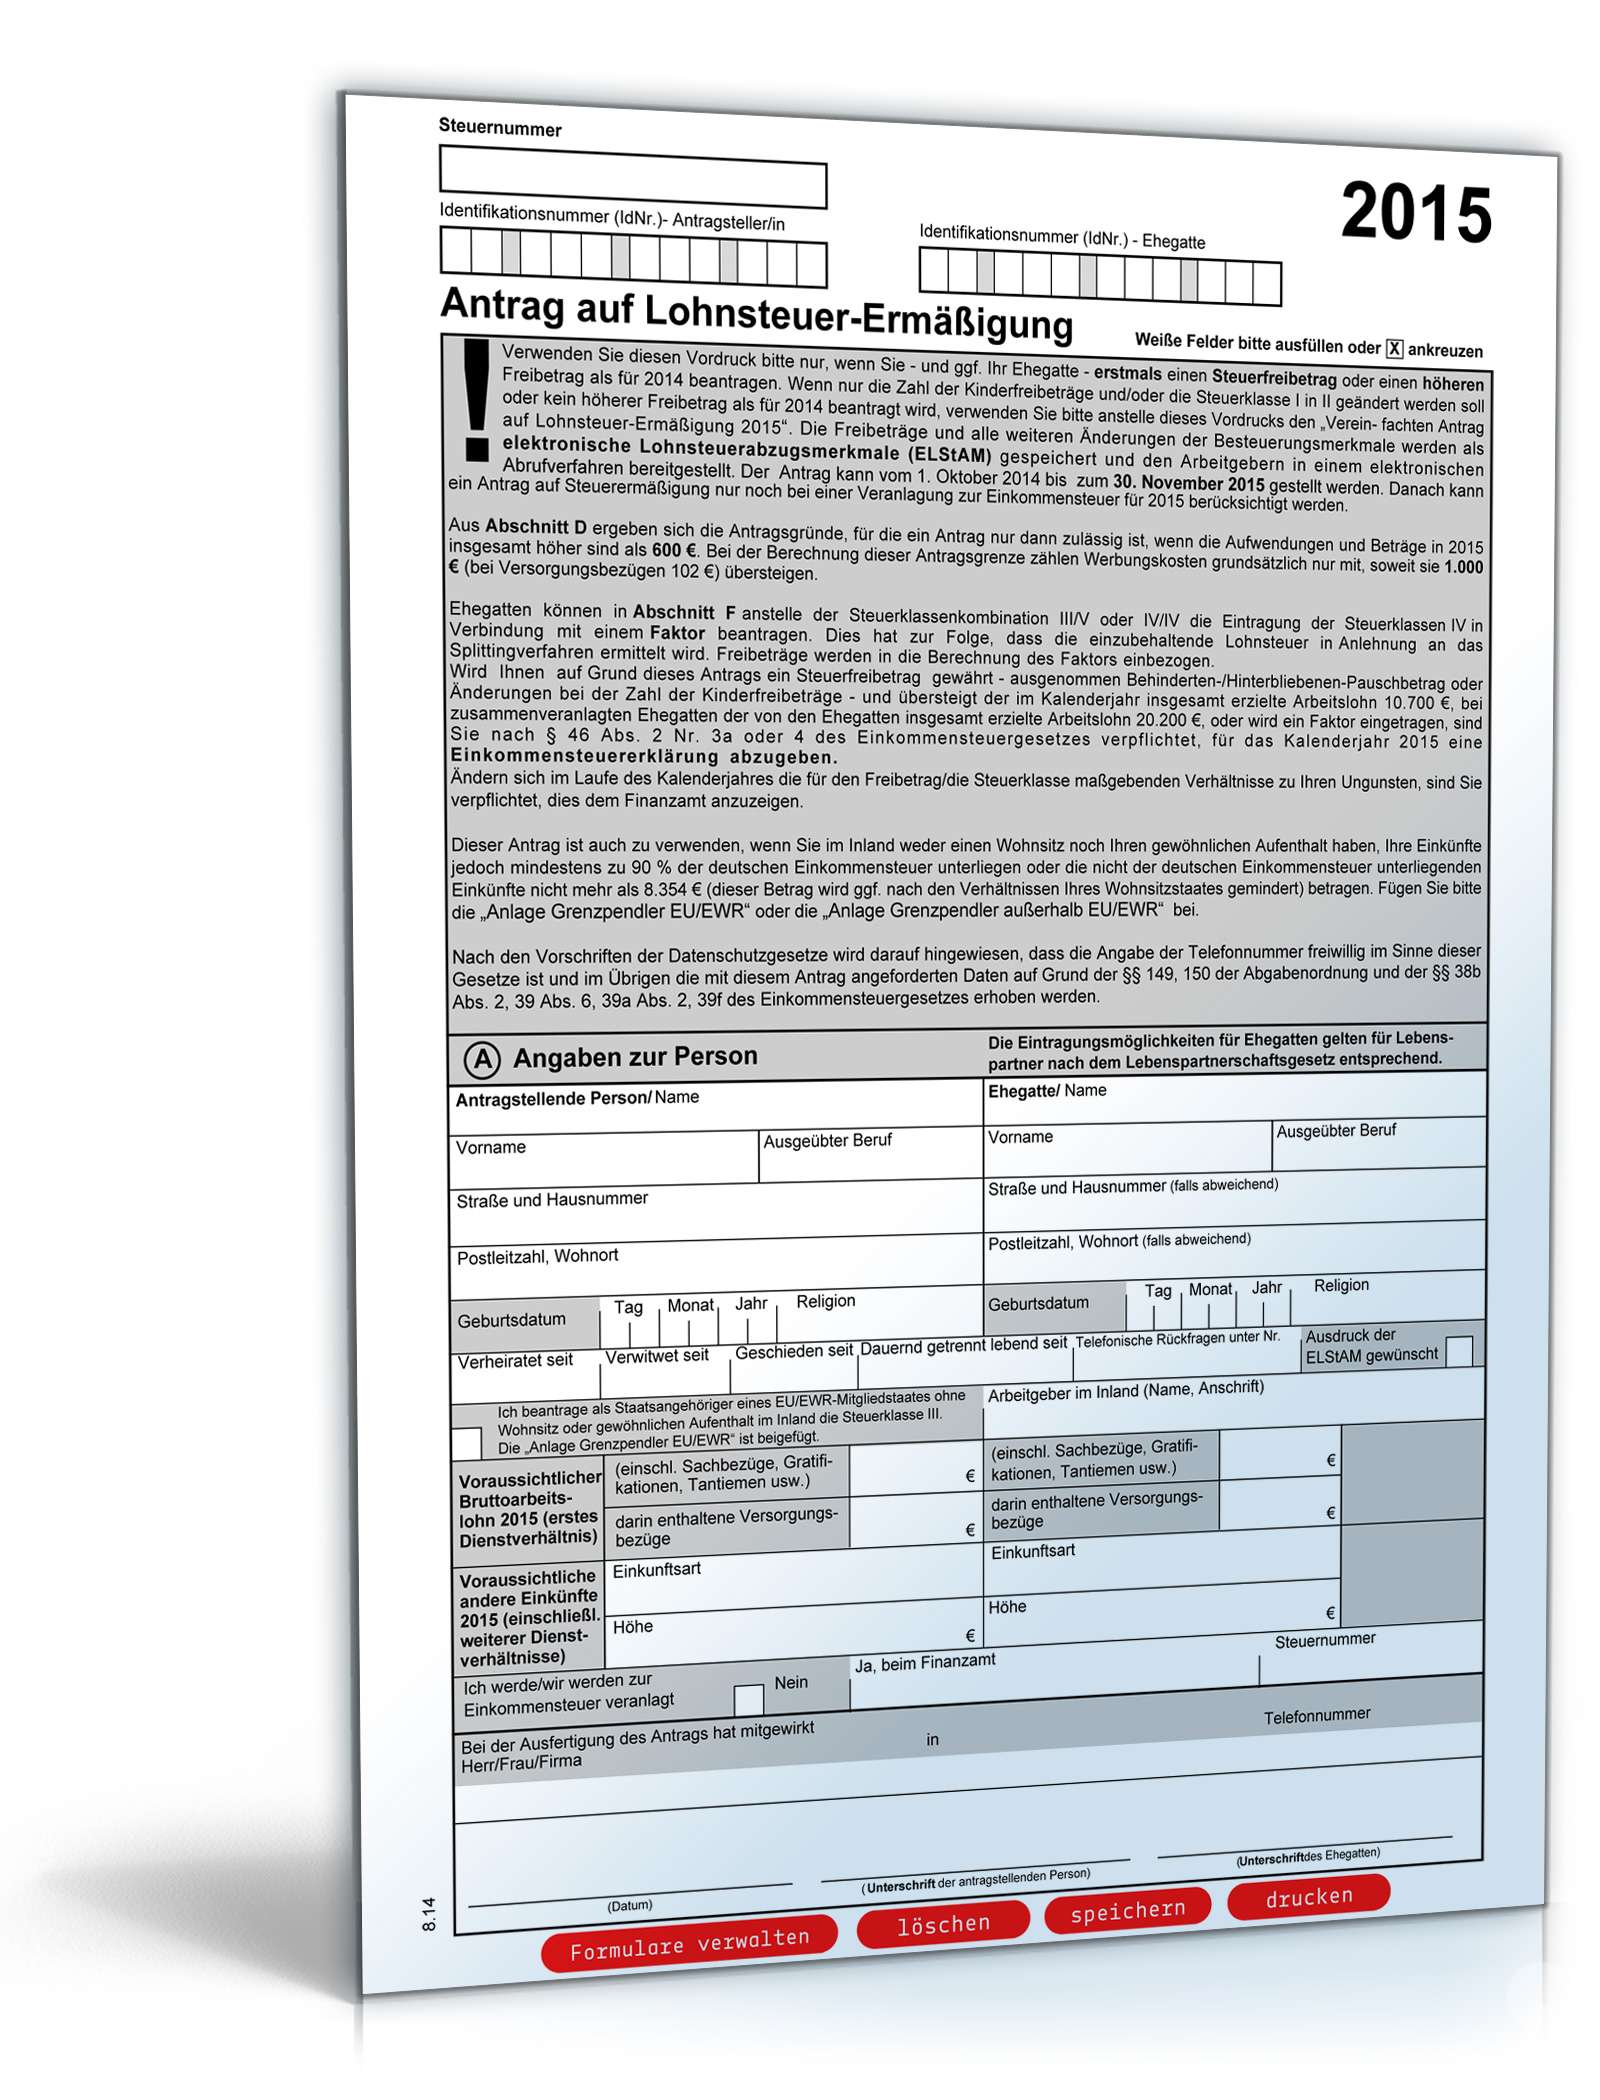 Antrag auf Lohnsteuer-Ermäßigung 2015: Formular zum Download